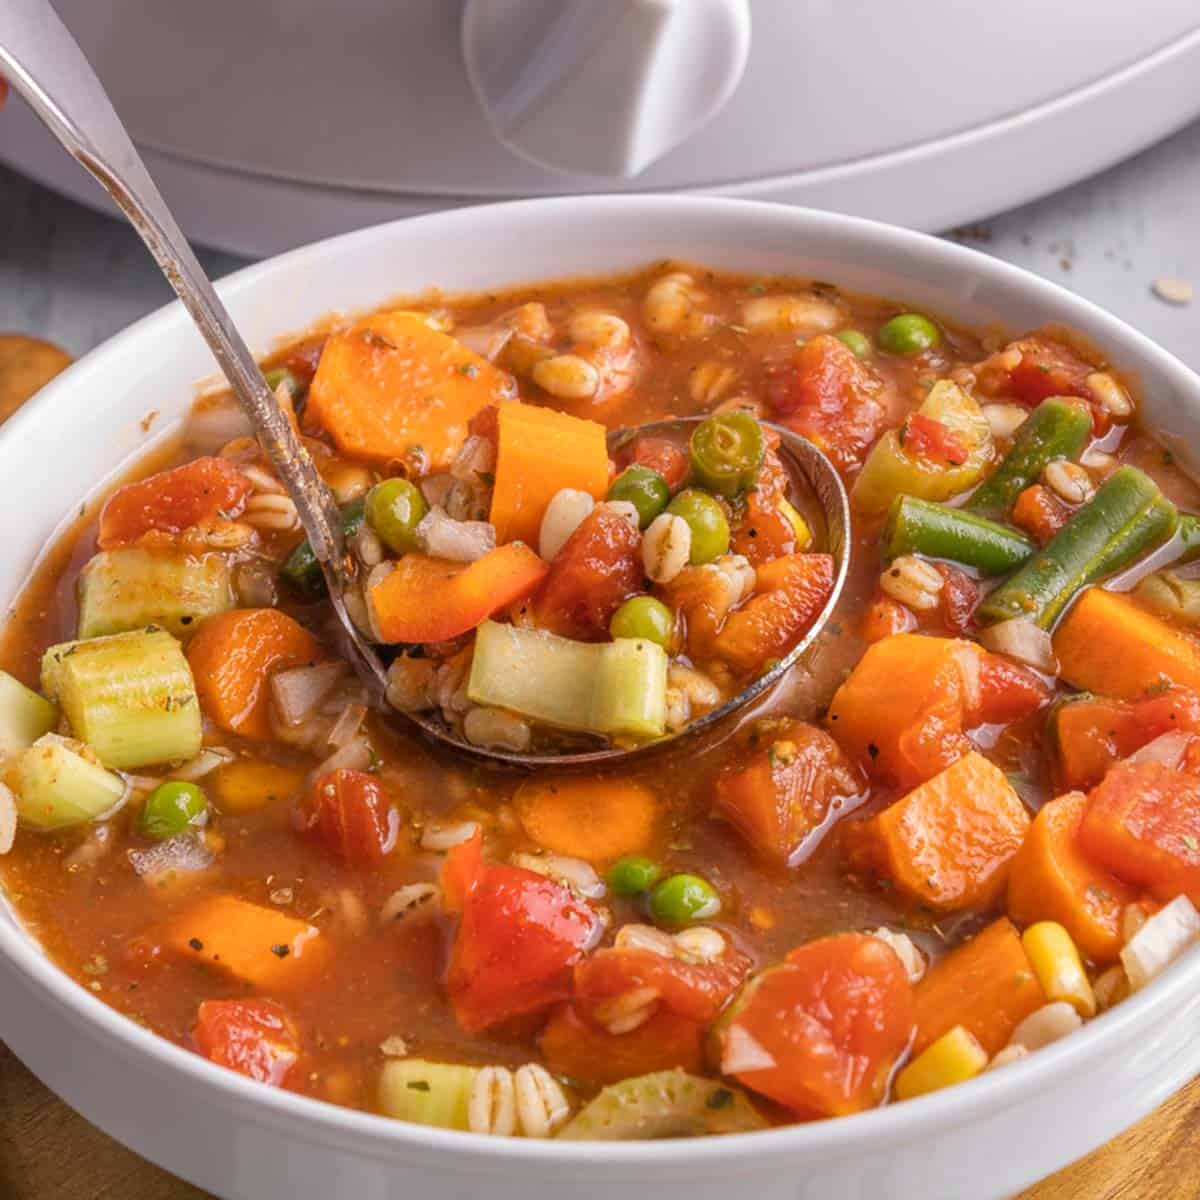 https://sundaysuppermovement.com/wp-content/uploads/2023/04/crockpot-vegetable-soup-featured.jpg